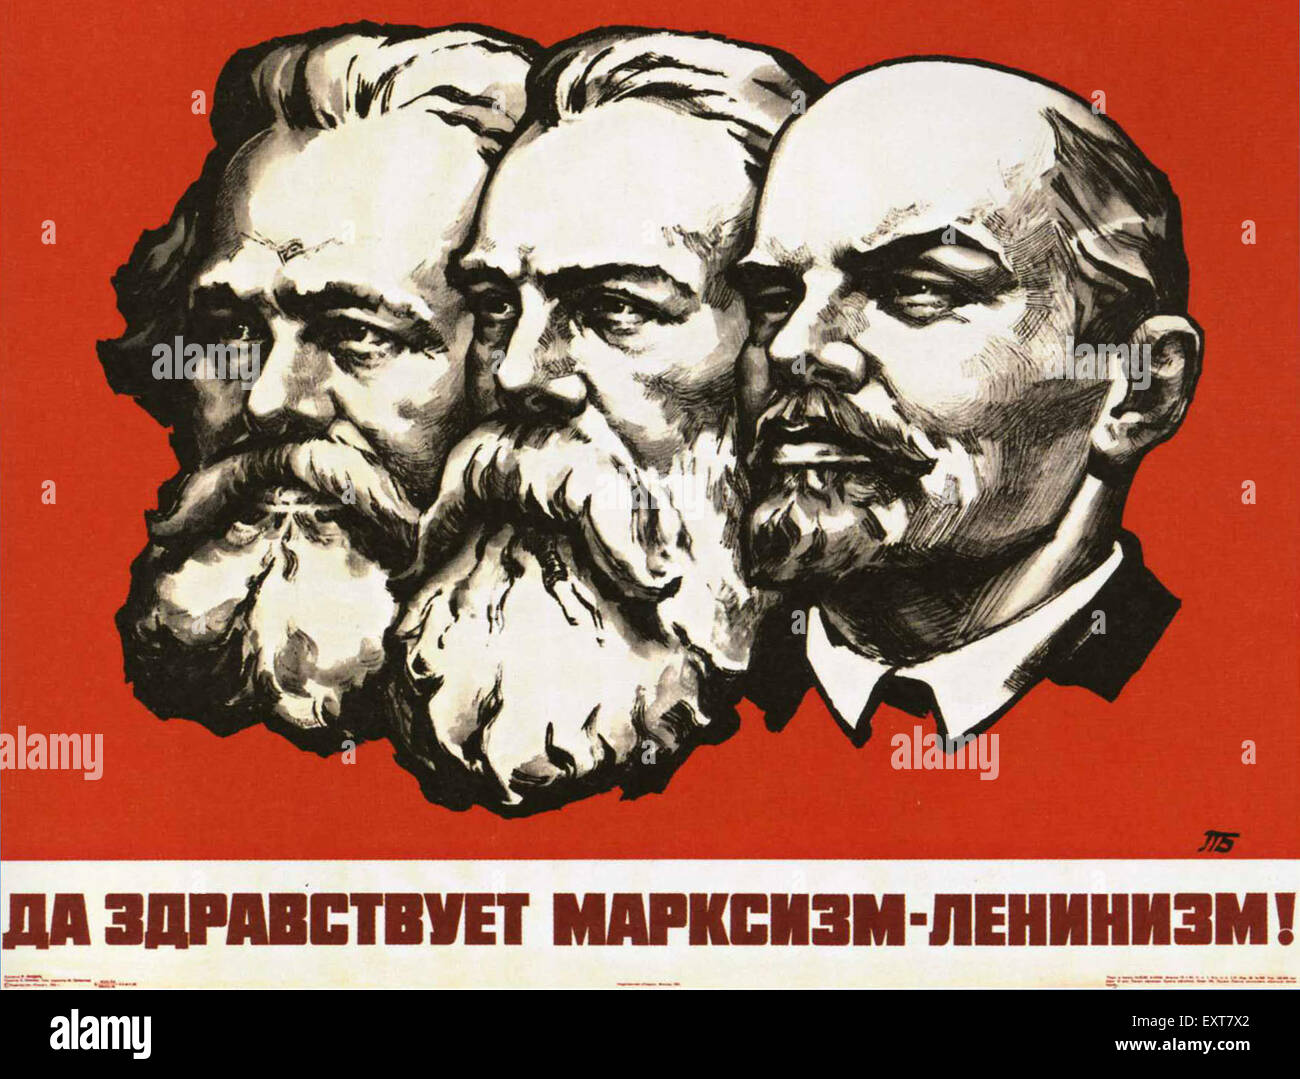 Ленинизм идеология. Маркс - Энгельс - Ленин.